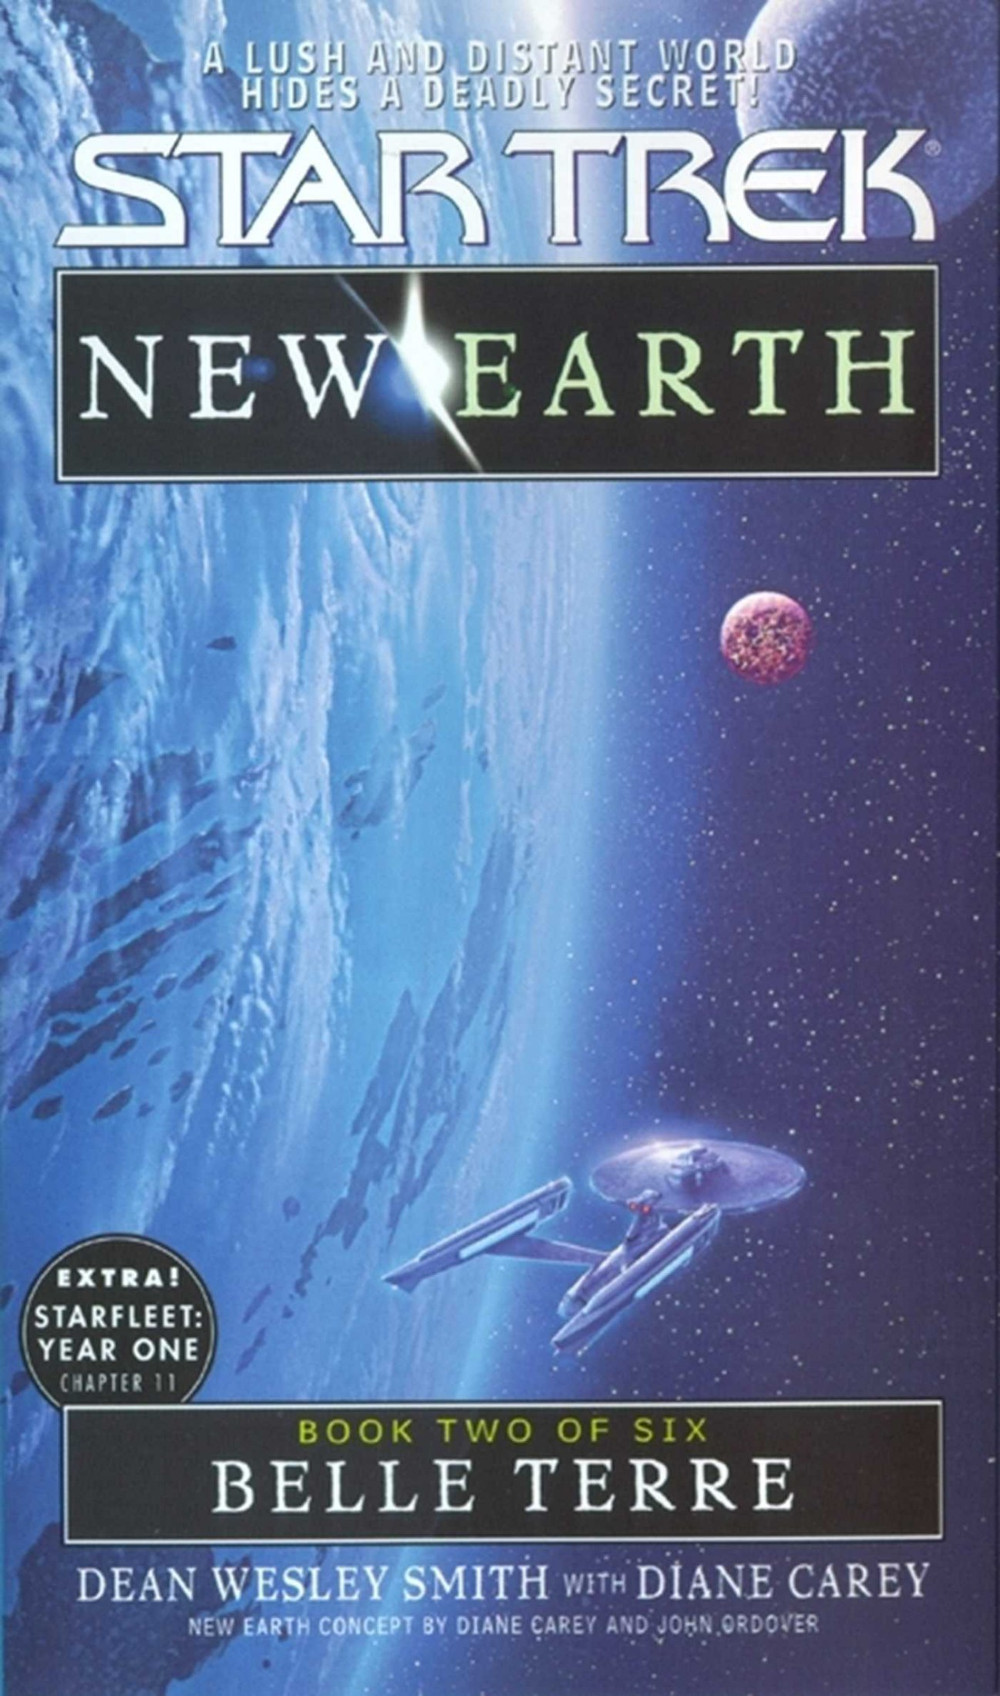 New Earth #2: Belle Terre (Jun 2000)